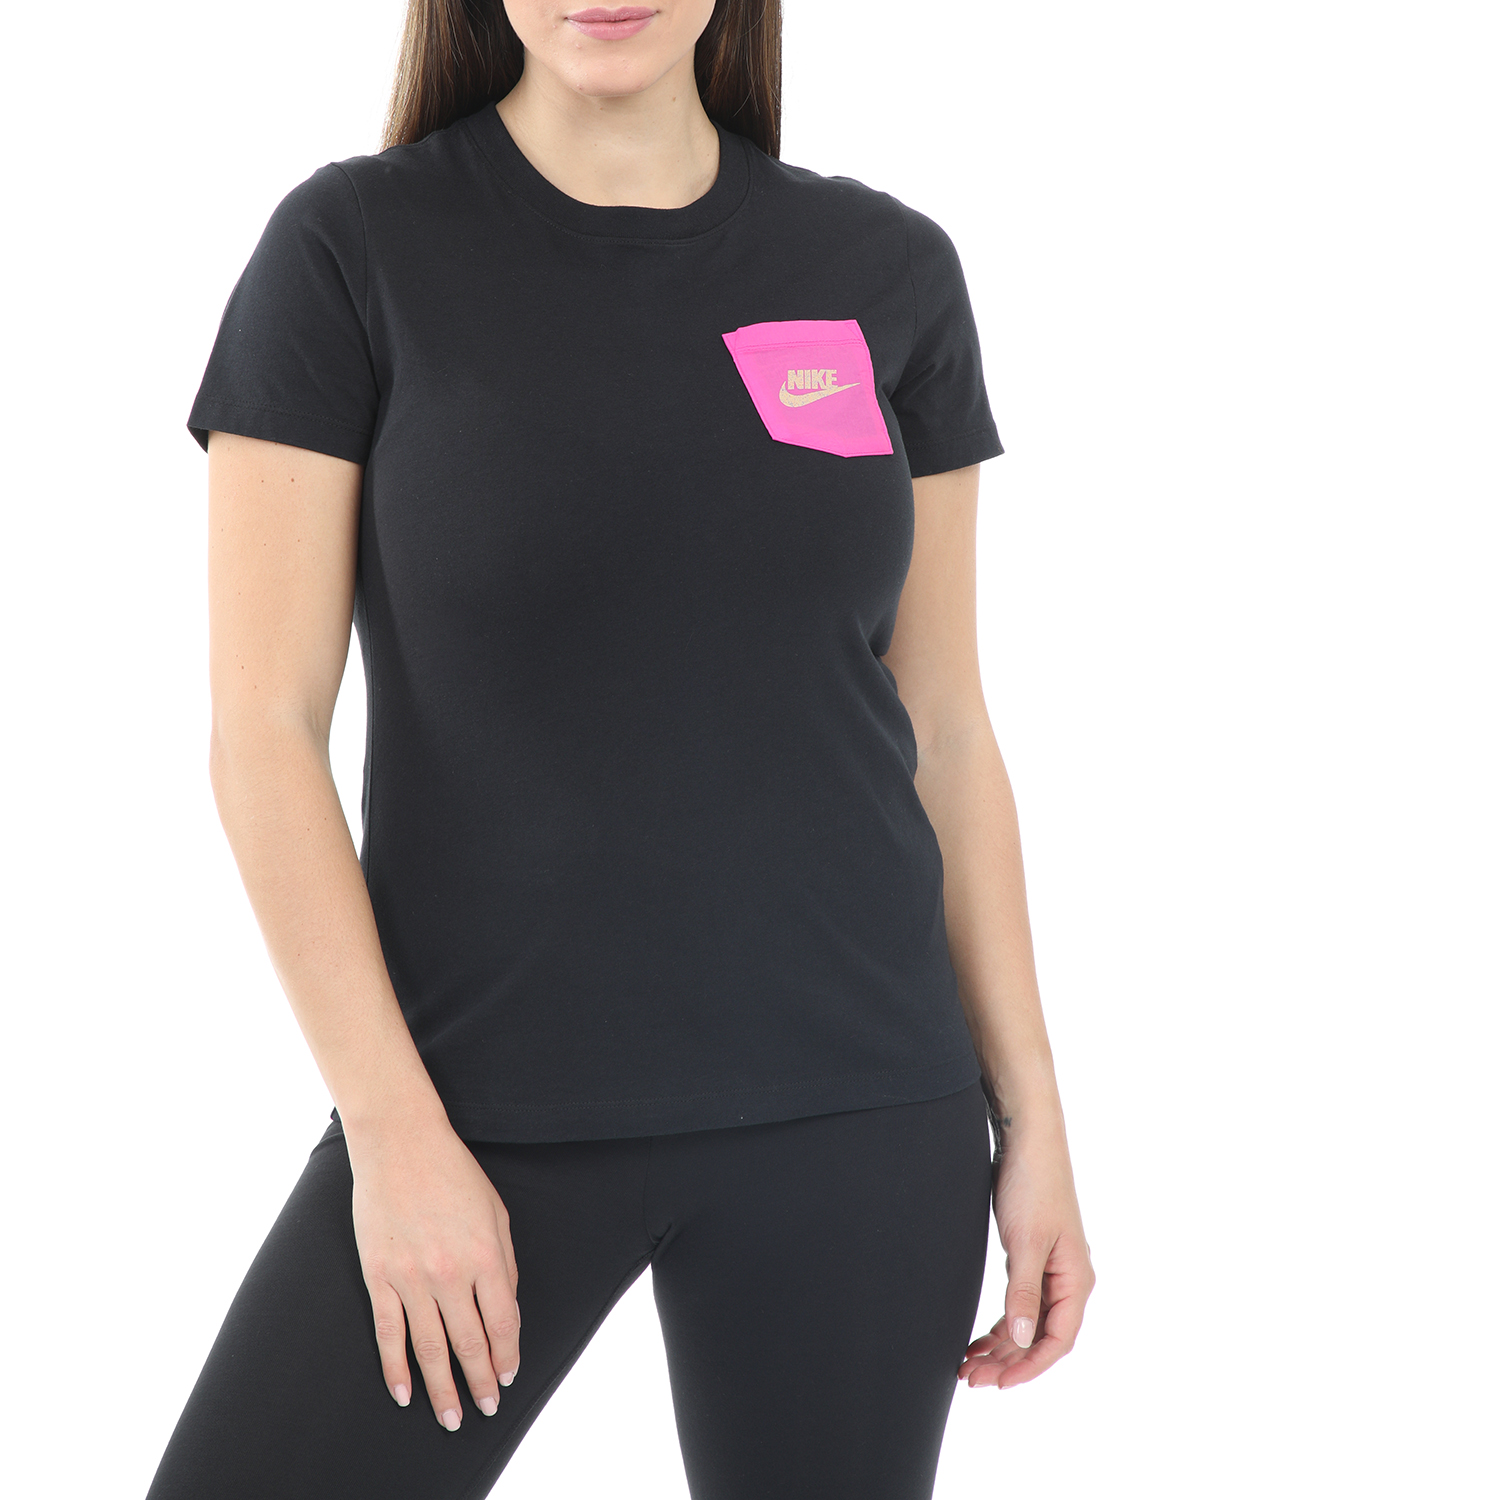 Γυναικεία/Ρούχα/Αθλητικά/T-shirt-Τοπ NIKE - Γυναικείο t-shirt NIKE SW TEE ICON CLASH μαύρο